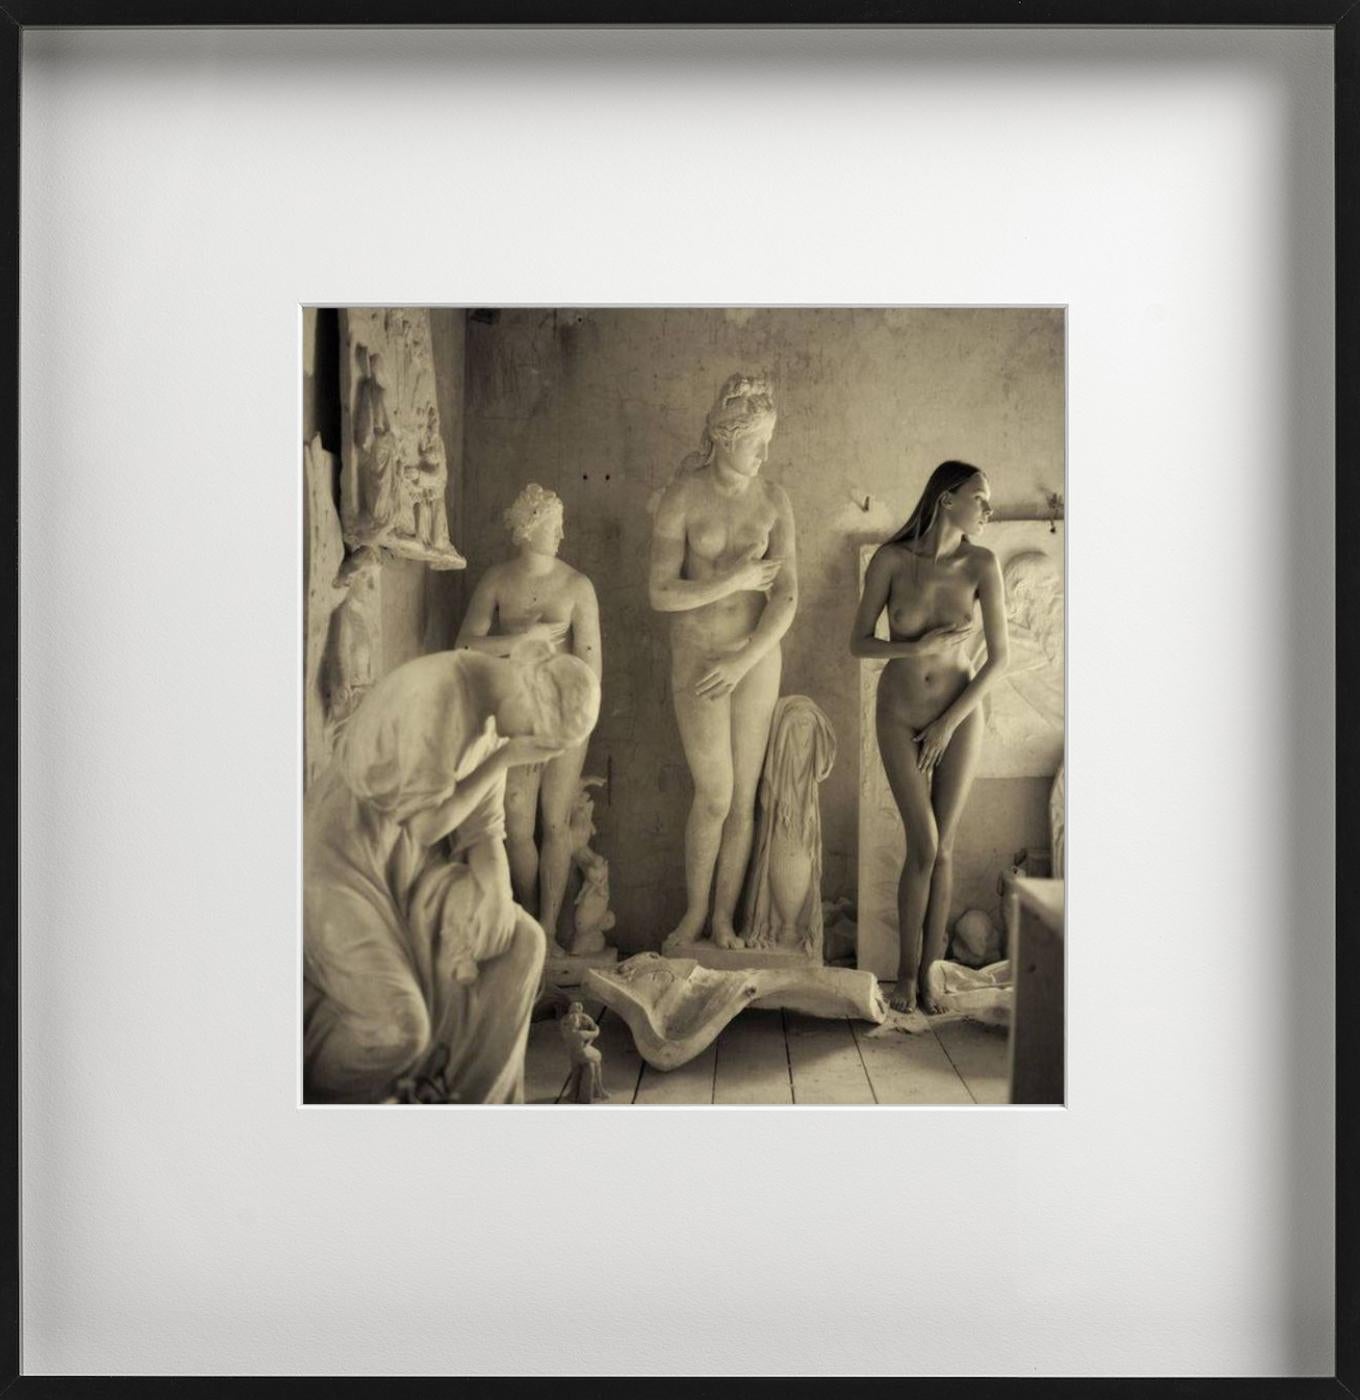 Skulpturaler Akt – nackt mit antiken Marmor Venusstatuen, Kunstfotografie (Zeitgenössisch), Photograph, von Guido Argentini